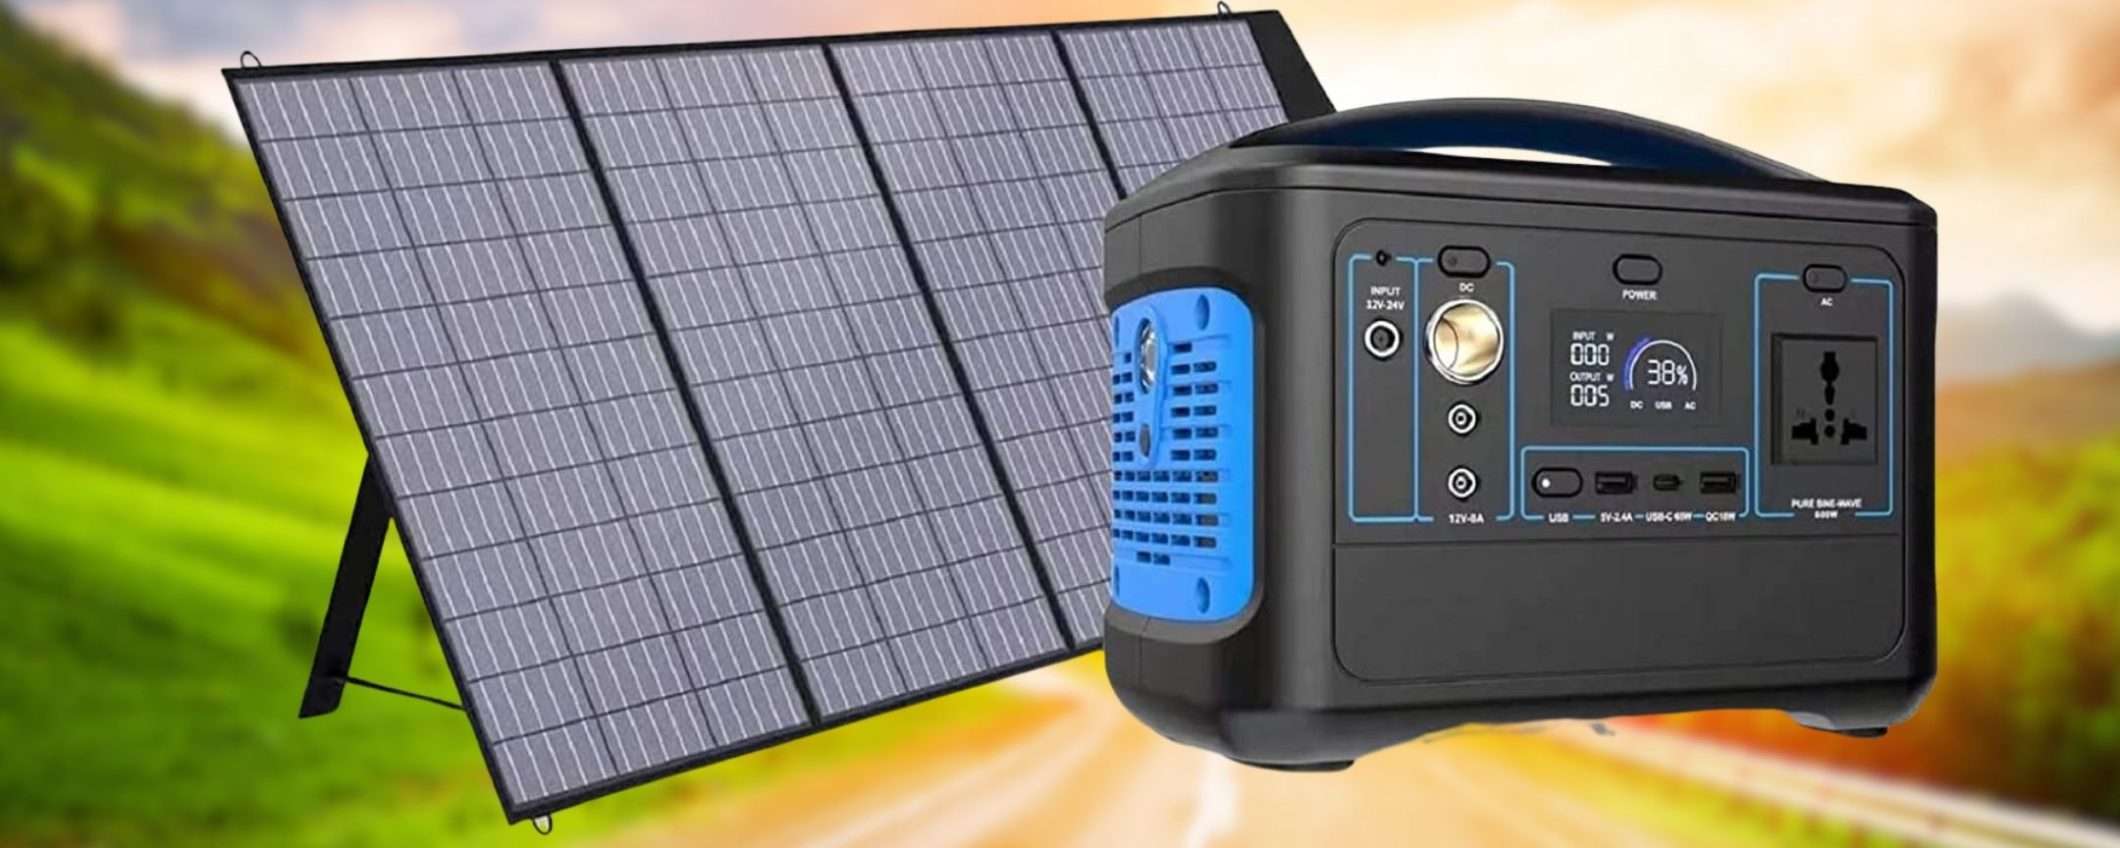 Centrale elettrica solare COMPLETA di pannello a prezzo assurdo (384€)